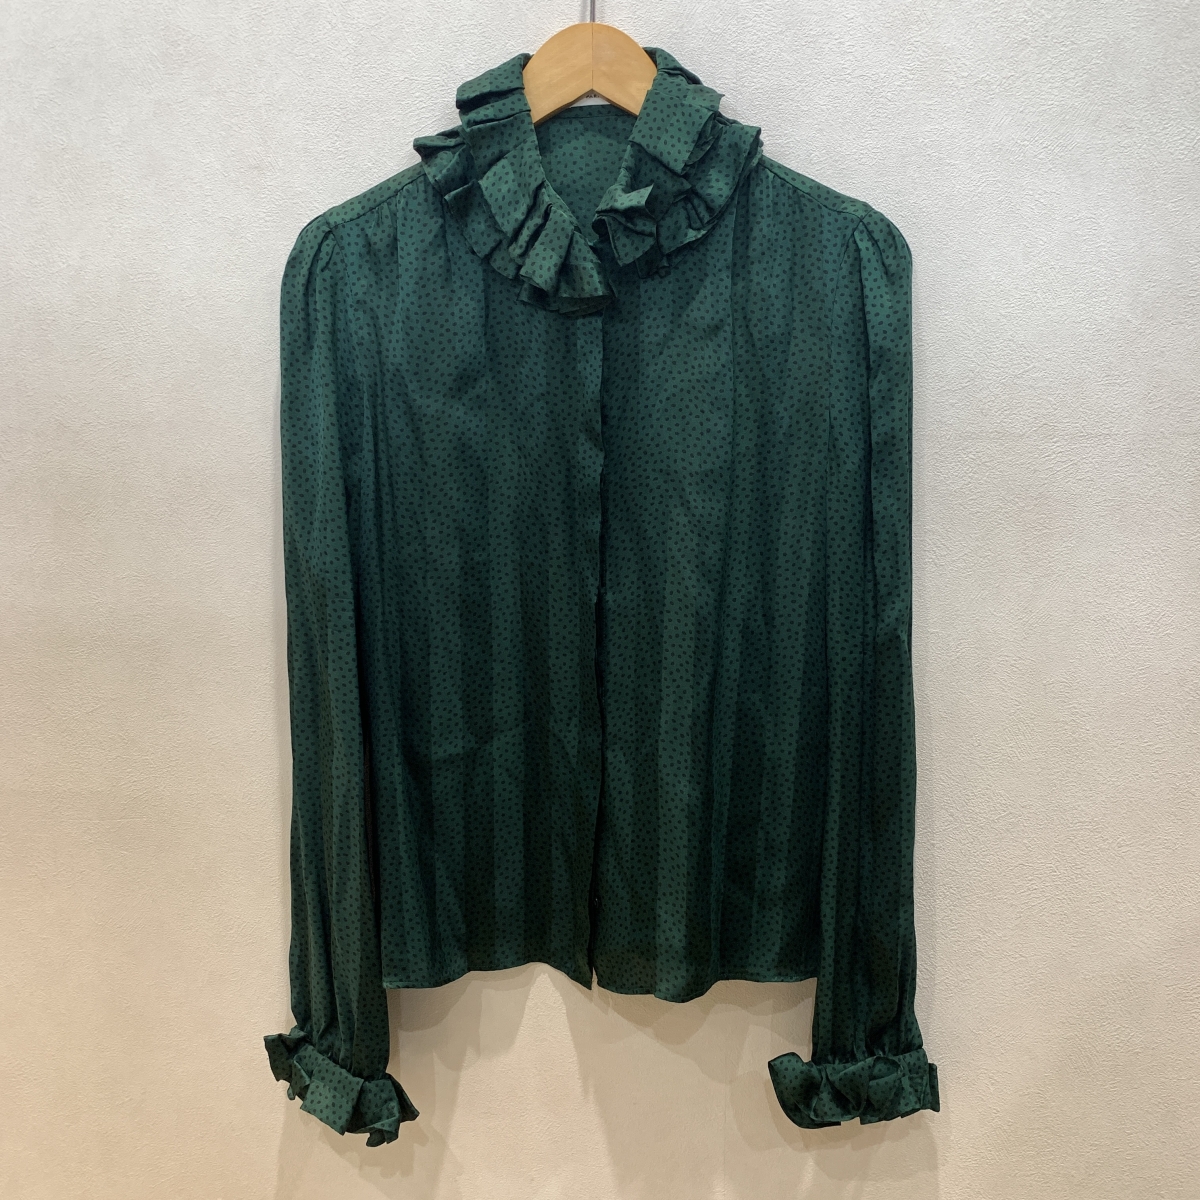 サンローランのグリーン シルクラファルドシャツ 633387の買取実績です。